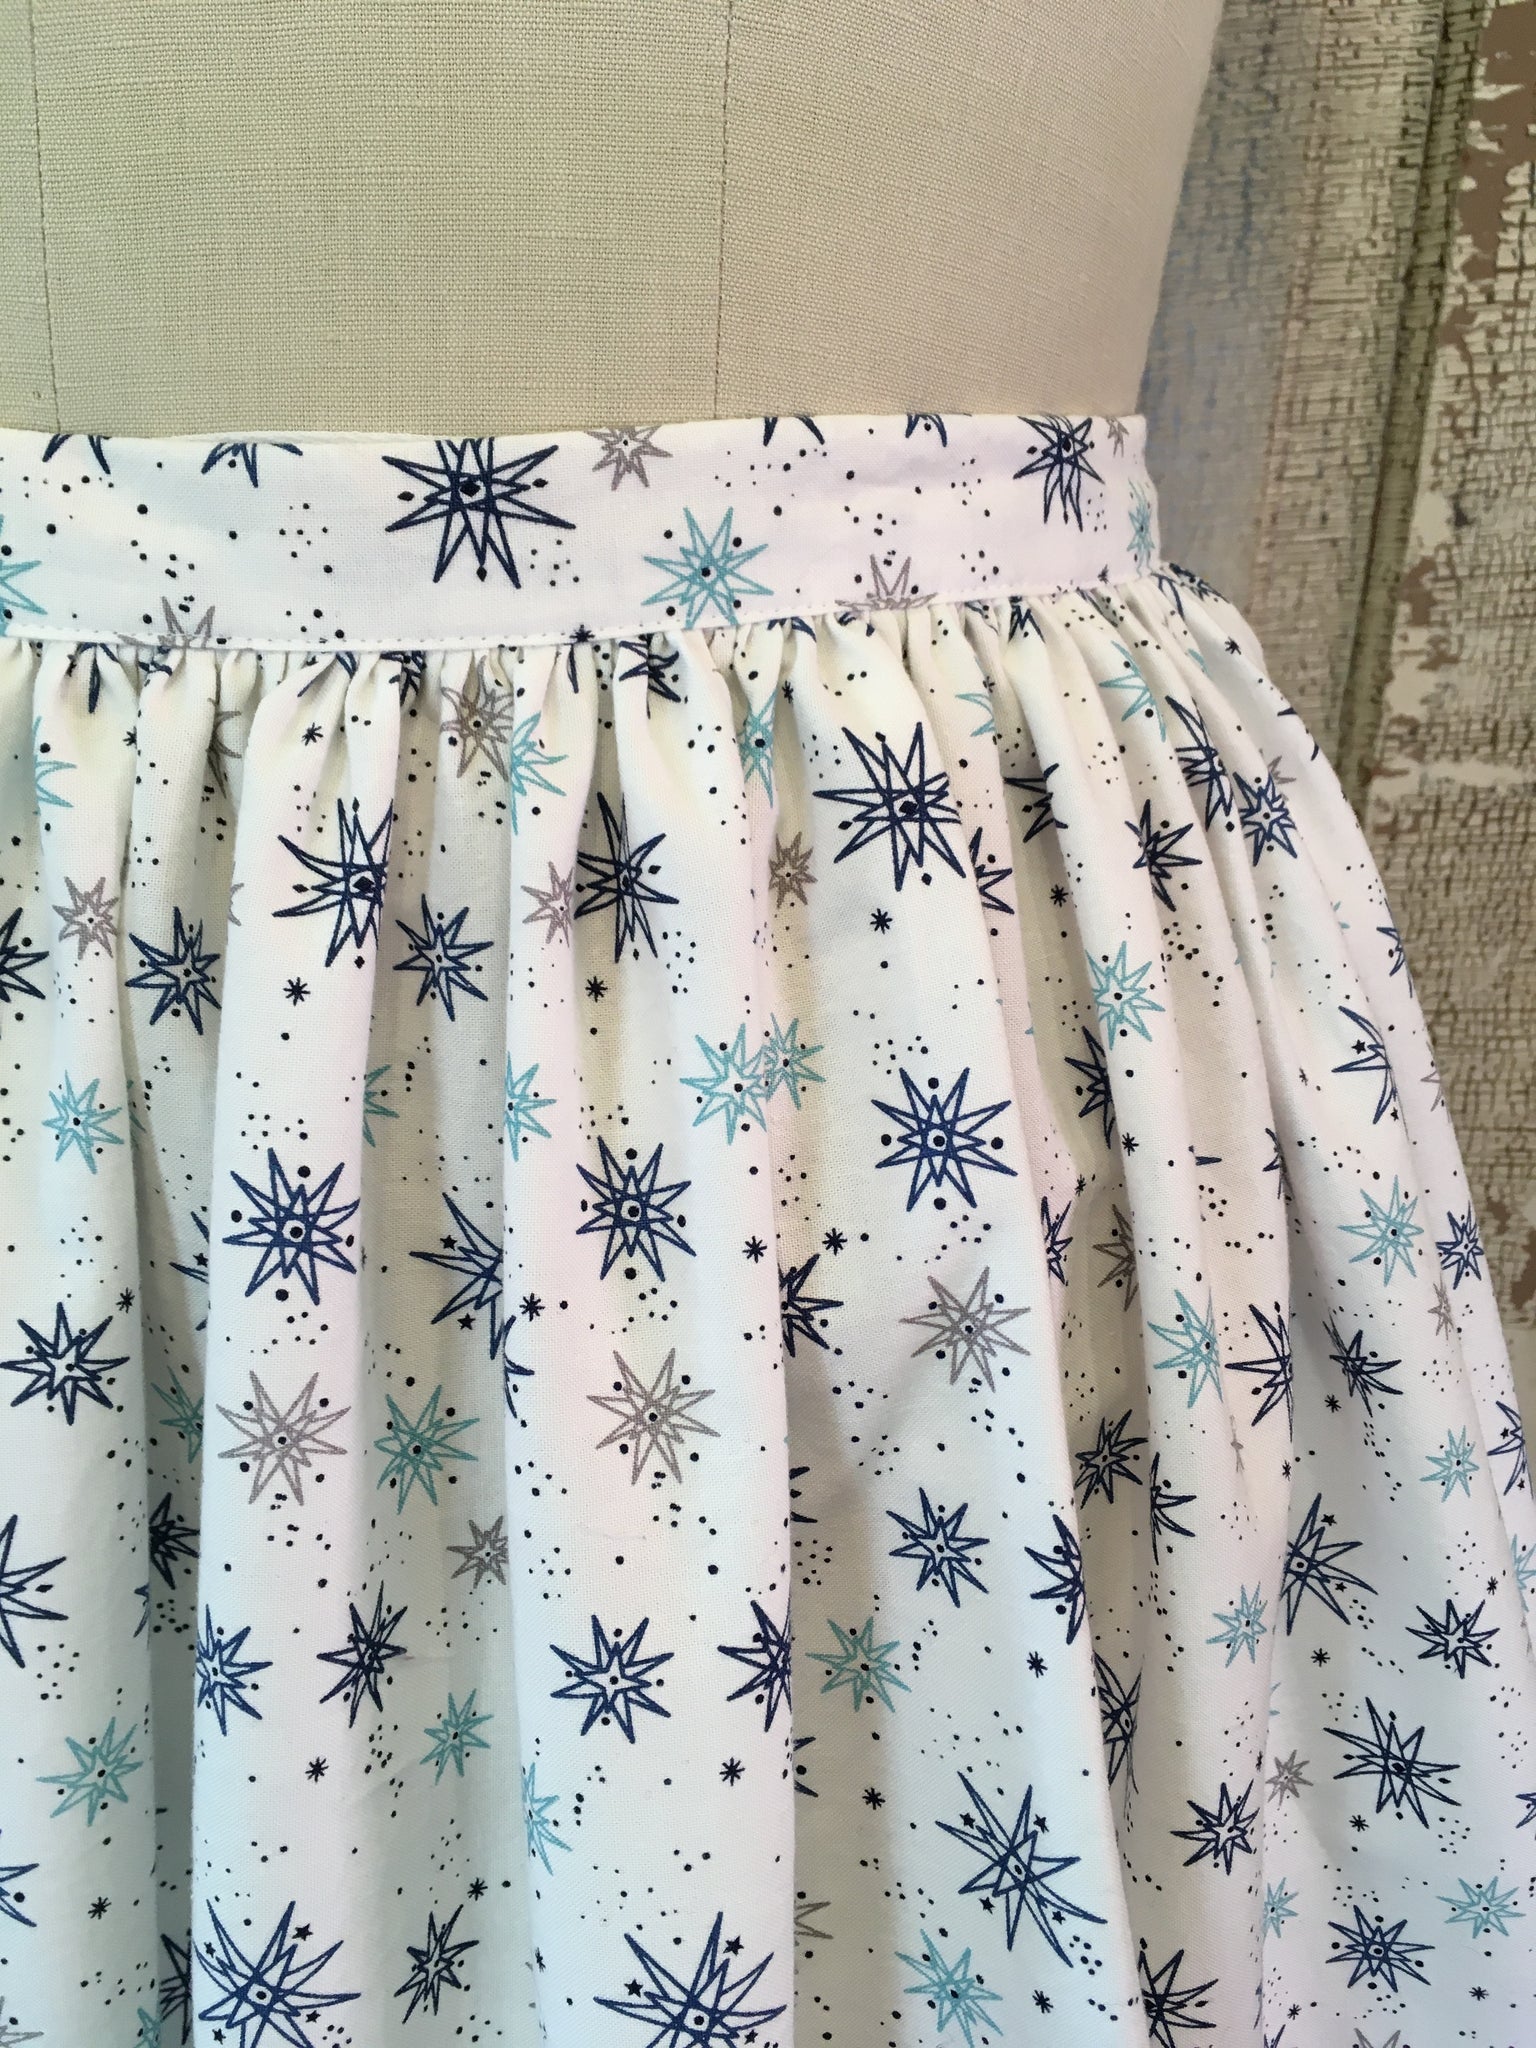 Gidget Skirt- "Blue Starburst"